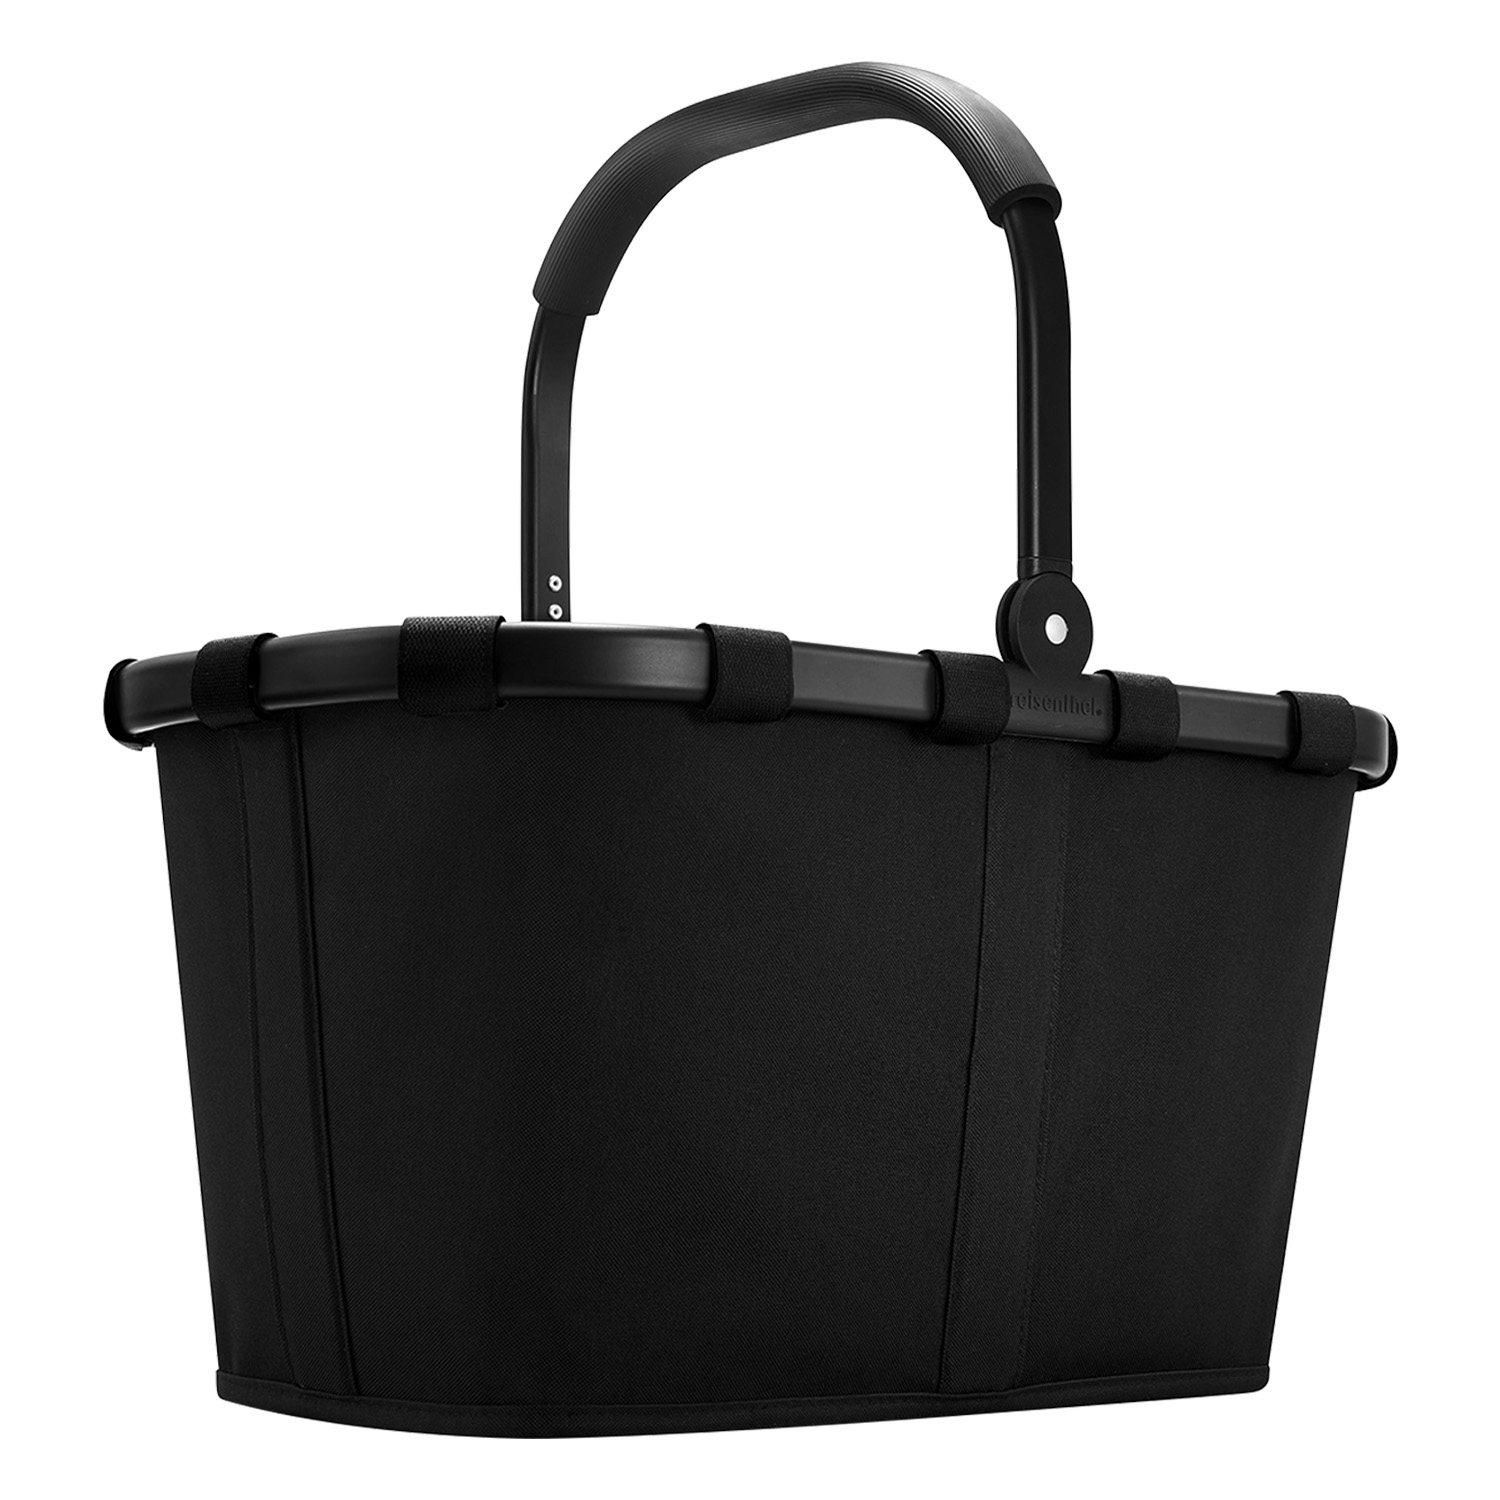 Einkaufskorb carrybag frame schwarz 22 Liter reisenthel